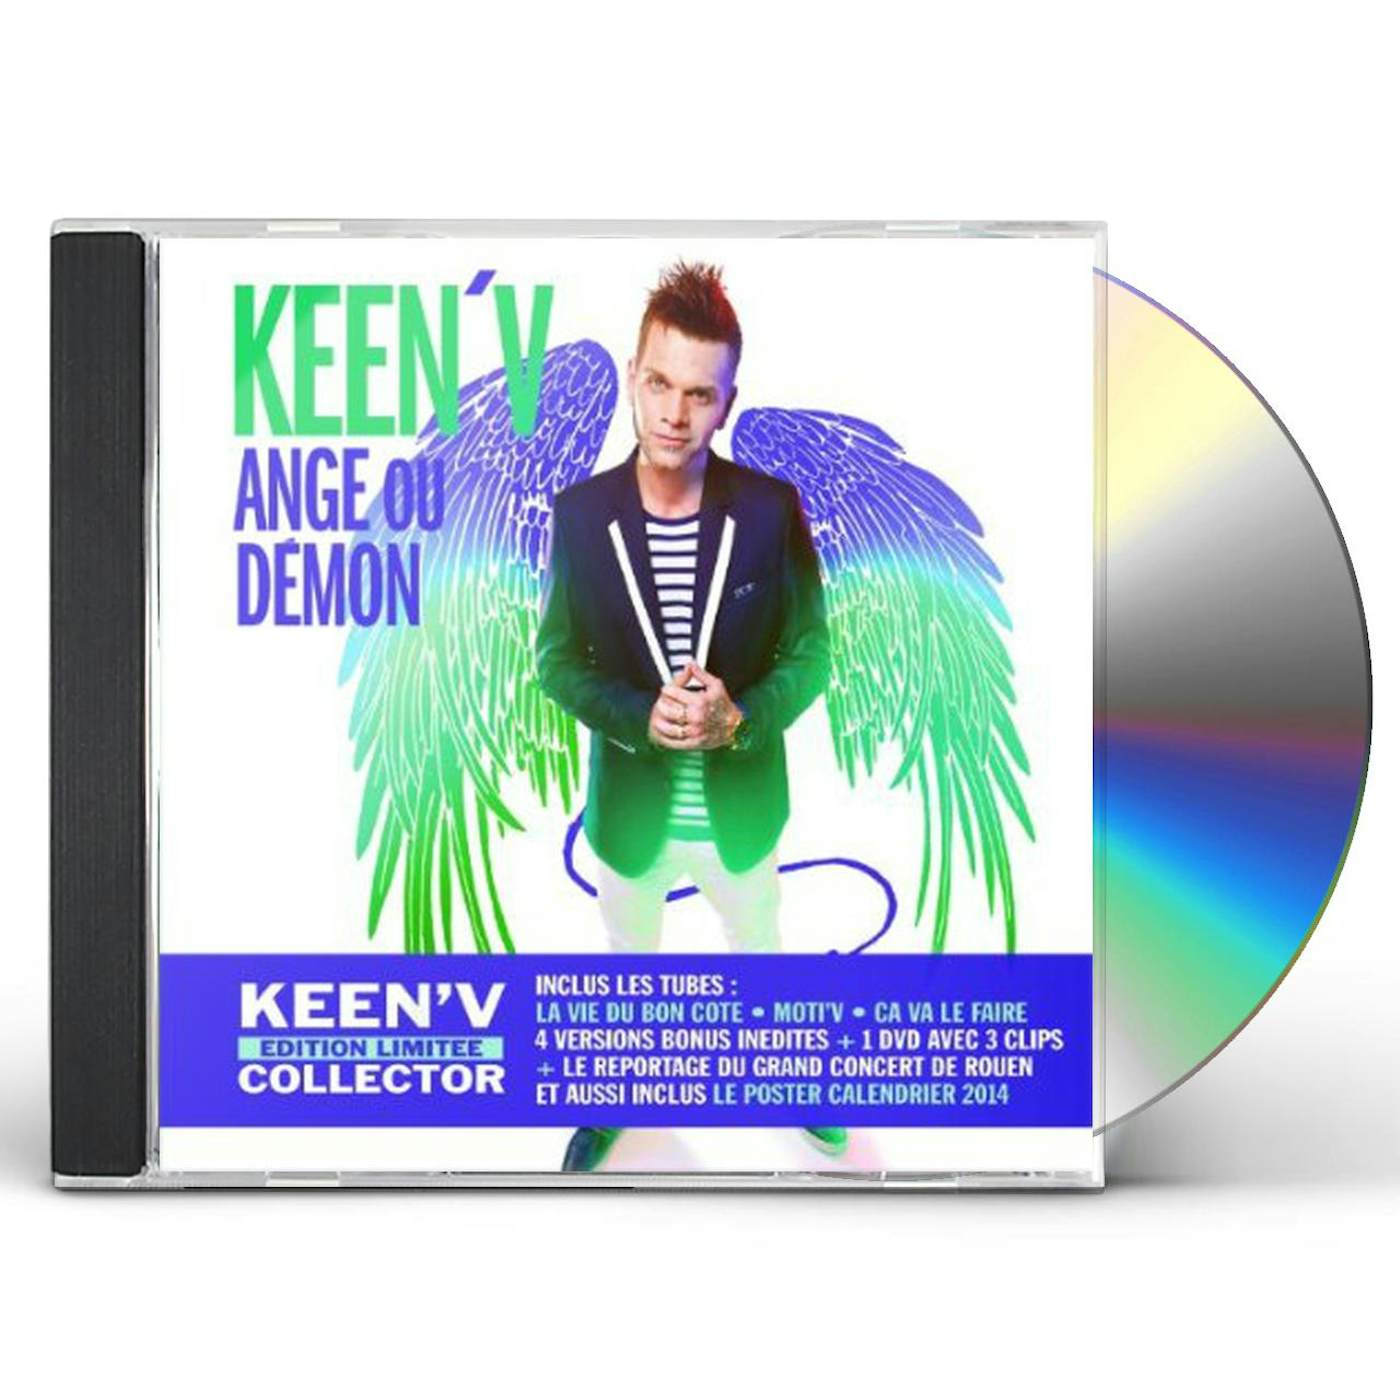 Keen' V 223752 ANGE OU DEMON CD